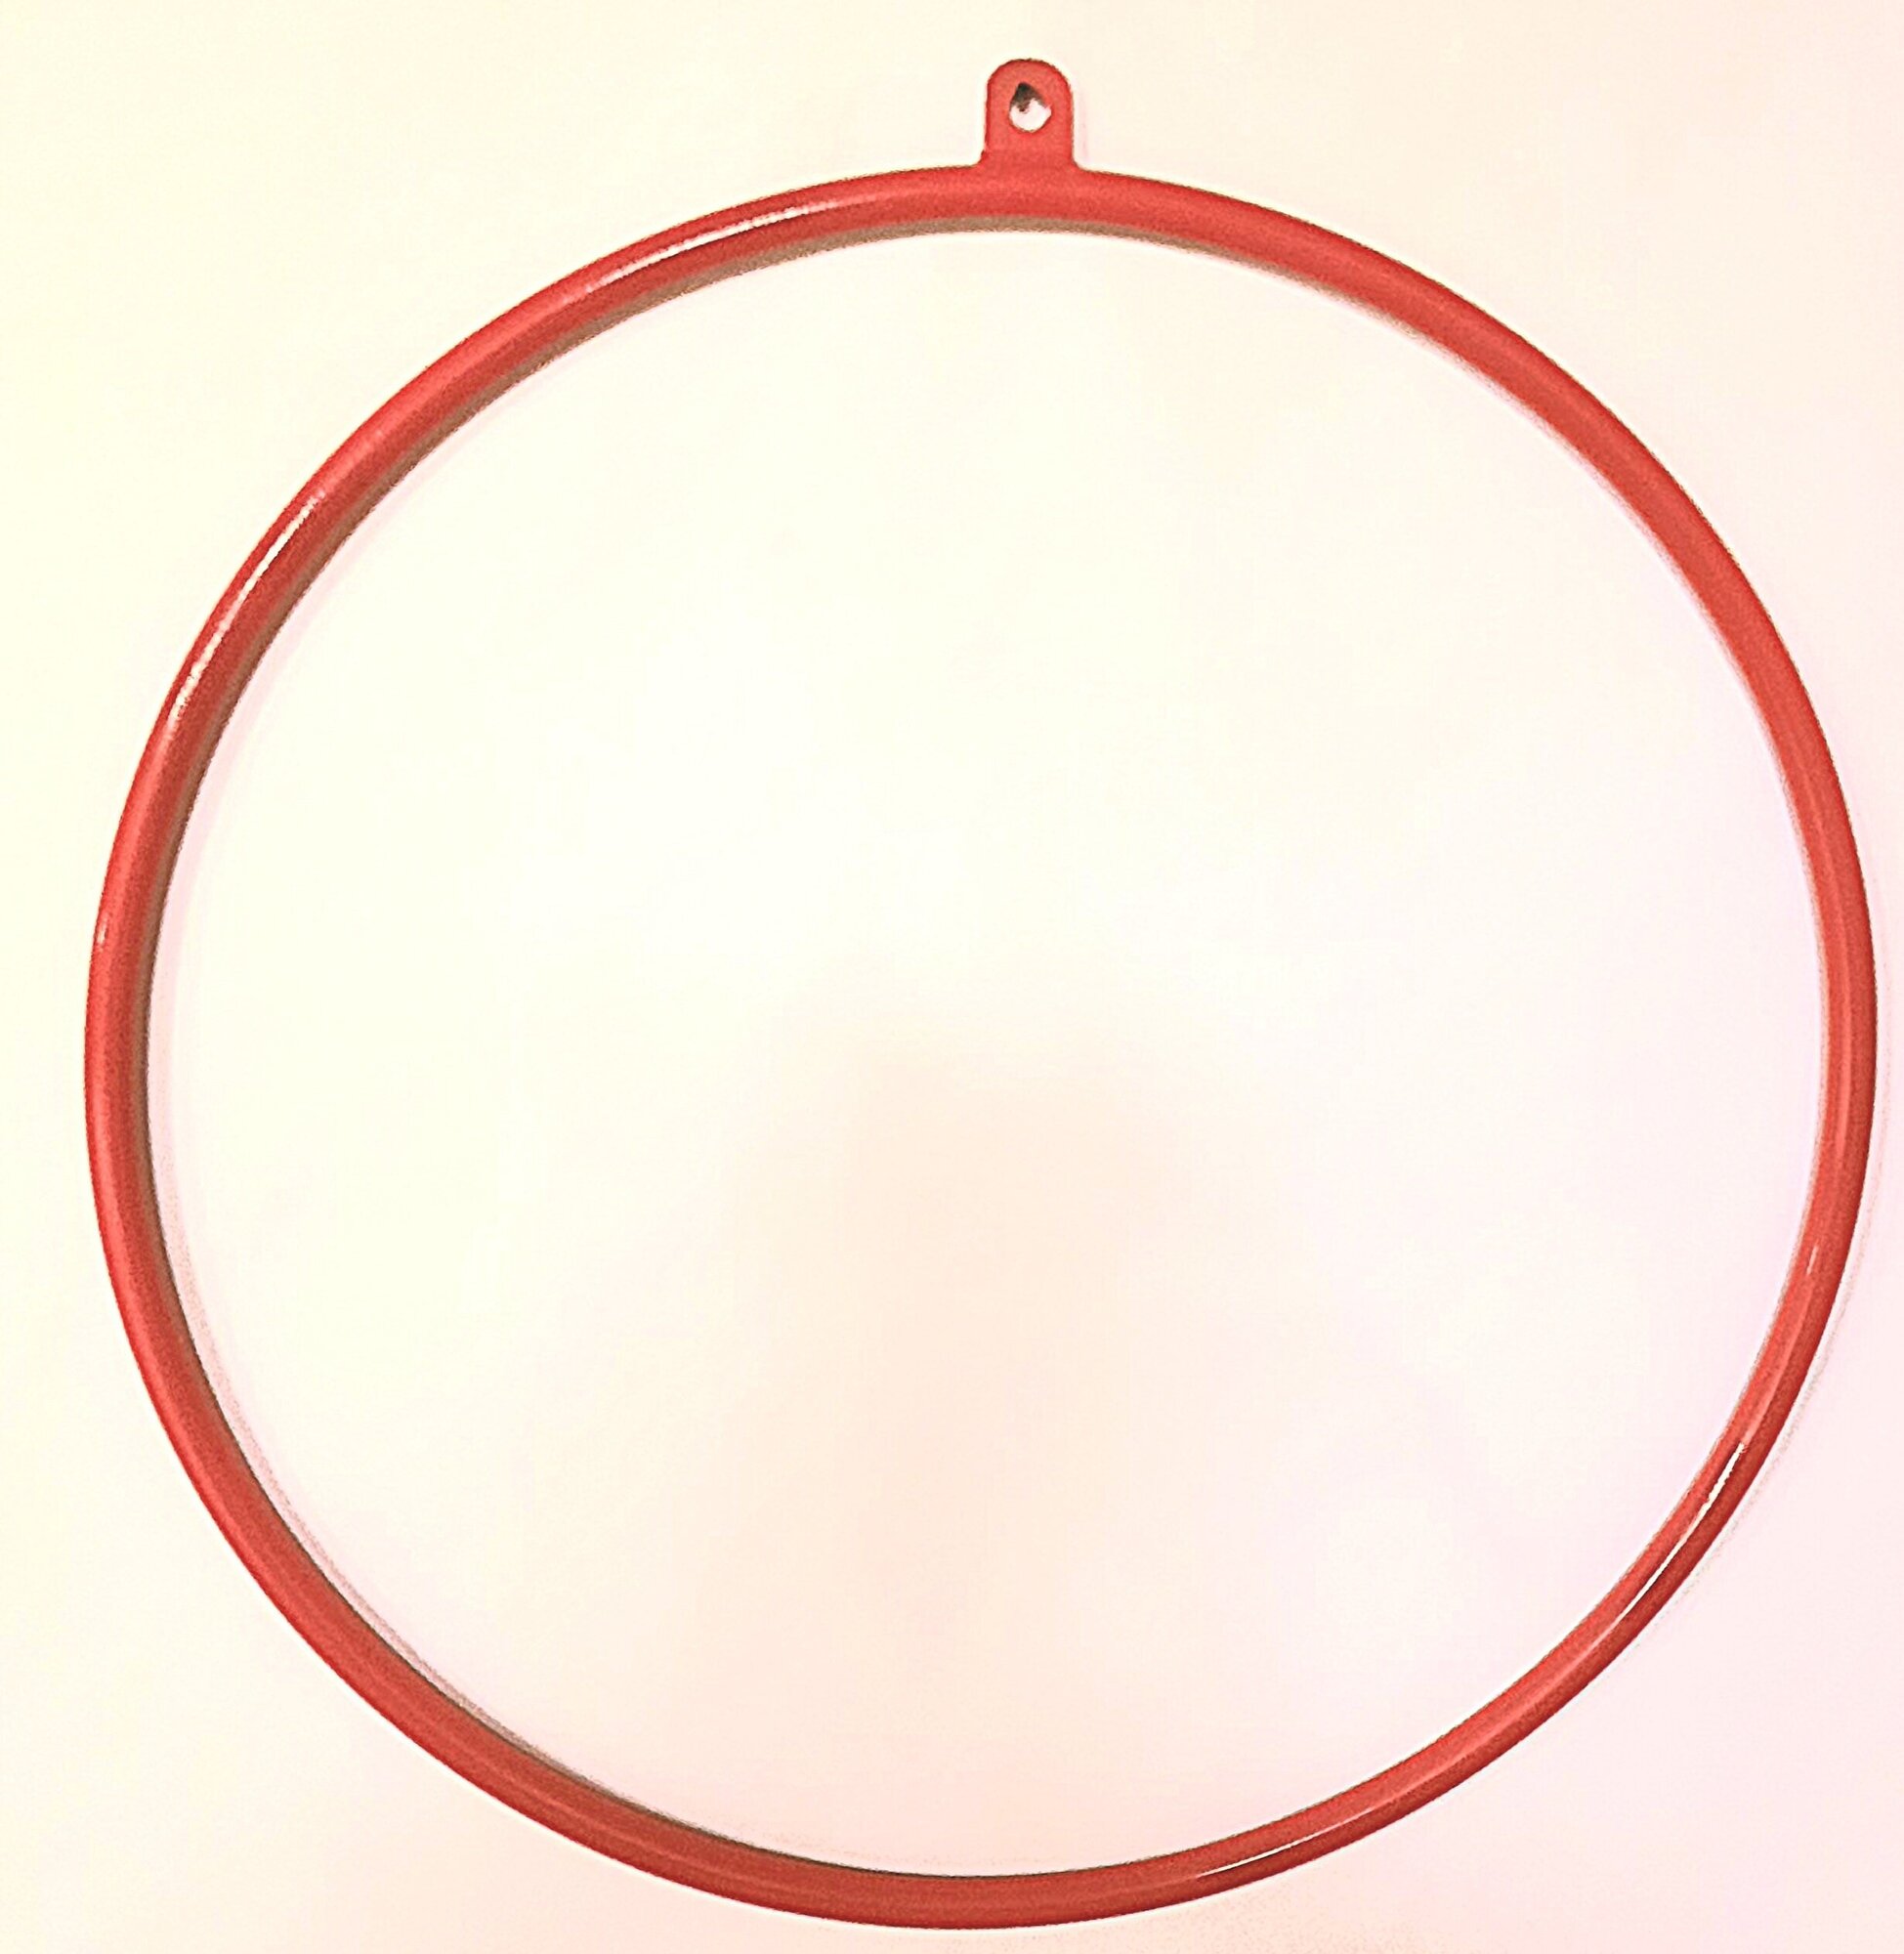 Металлическое кольцо для воздушной гимнастики, с подвесом, цвет красный, диаметр 95 см.